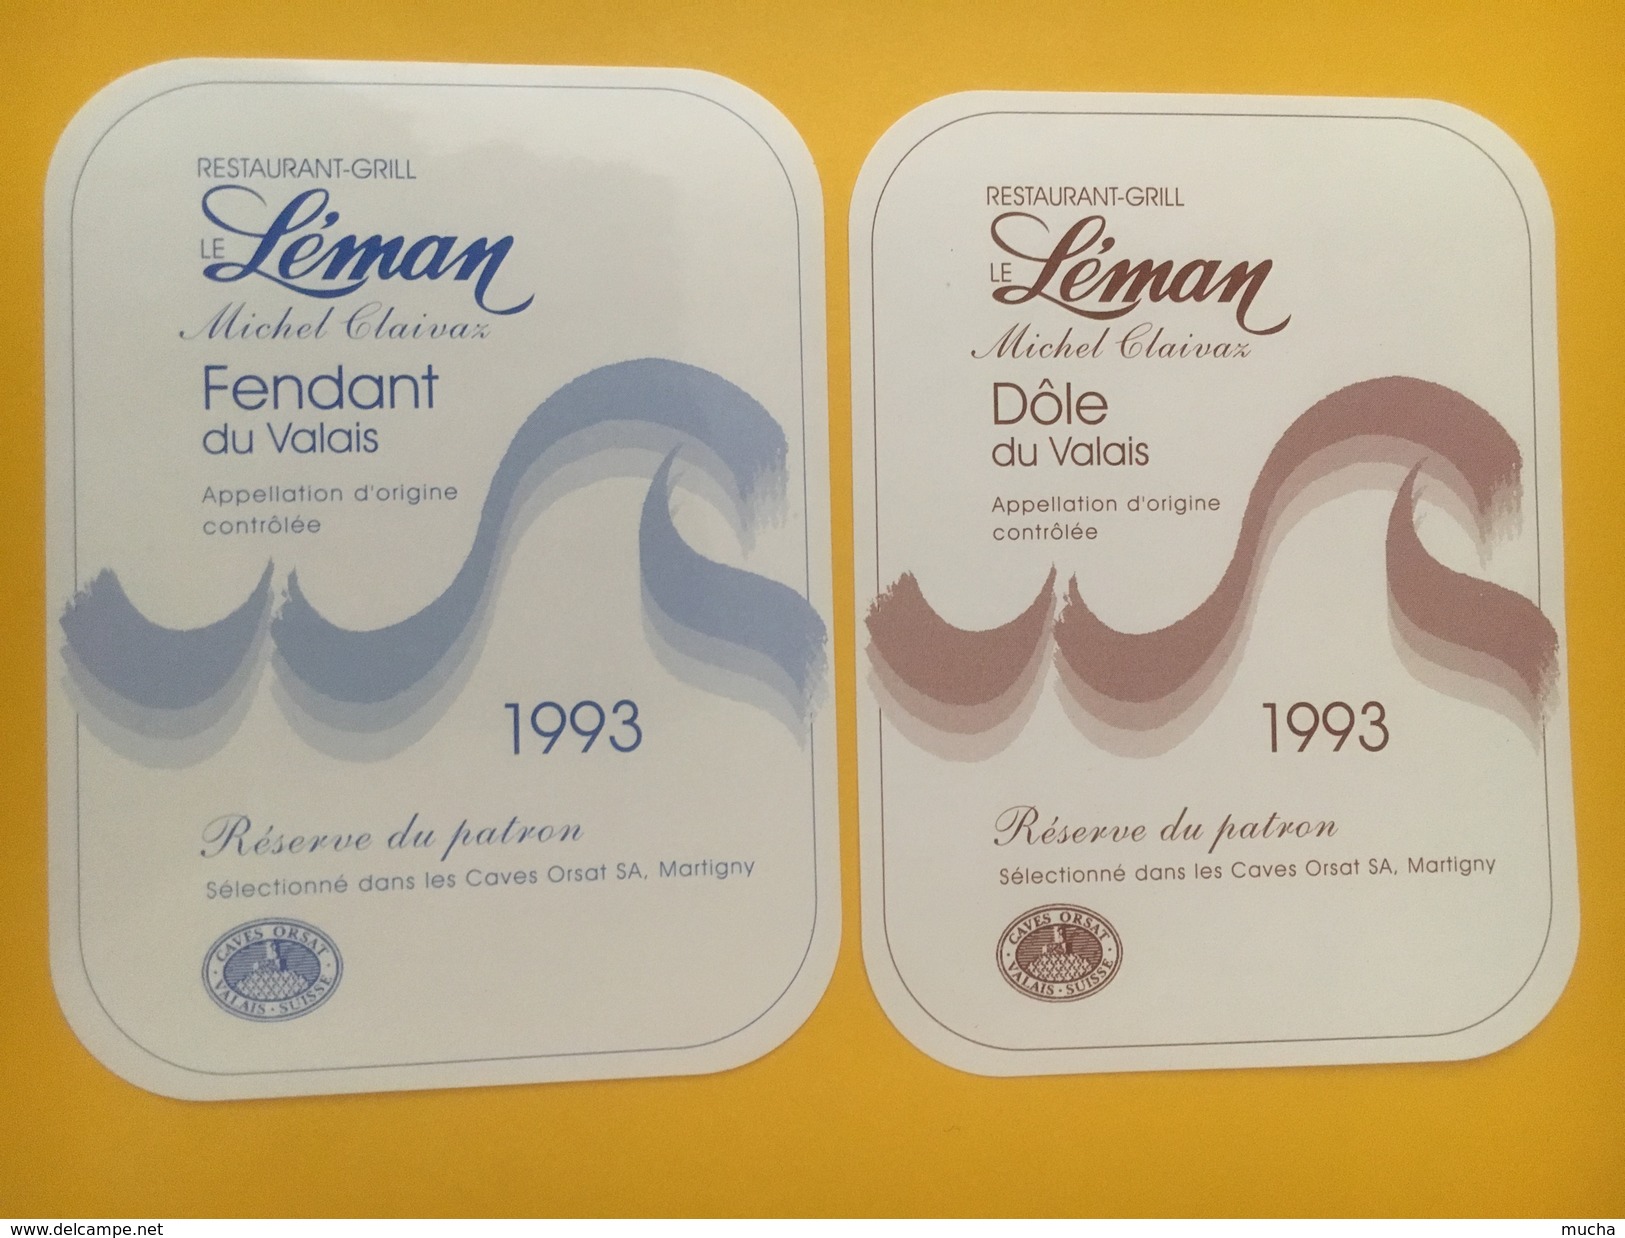 4343 - Restaurant-Grill Le Léman Michel Claivaz Valais Suisse Fendant & Dôle 1993 2 étiquettes - Calcio